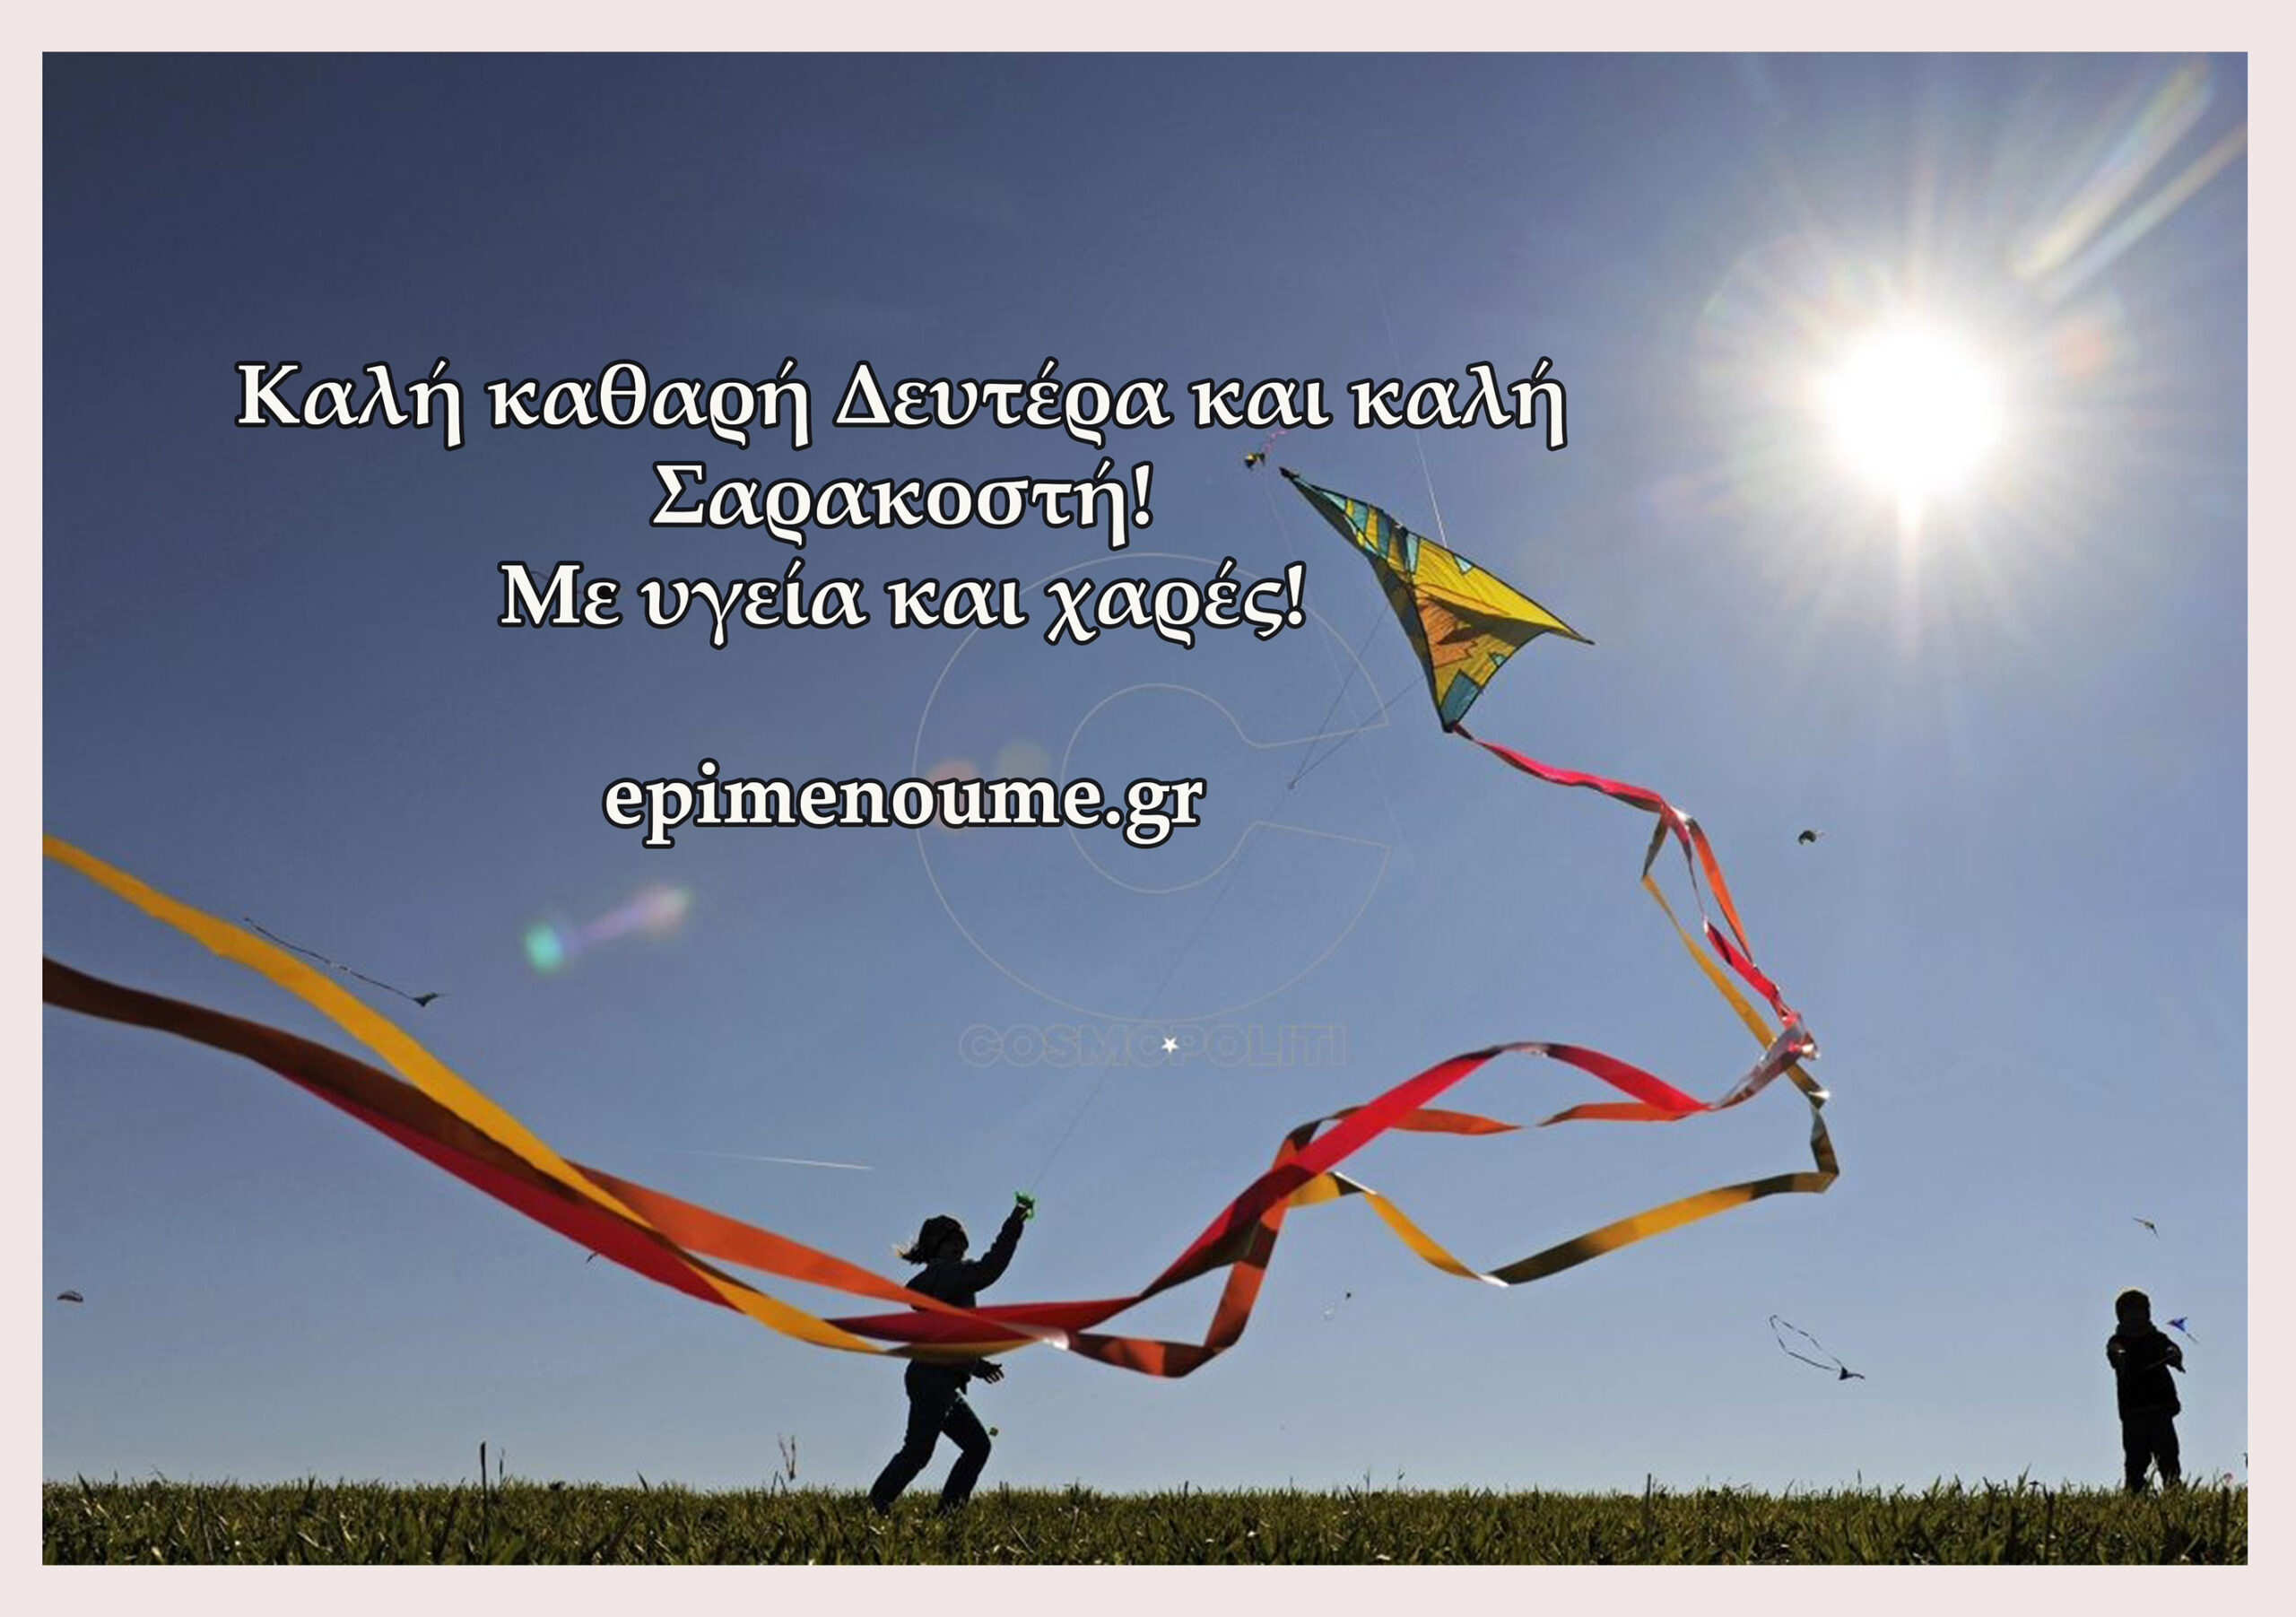 Η μάχιμη ιστοσελίδα σας epimenoume.gr, σας εύχεται: Καλή Καθαρή Δευτέρα και καλή Σαρακοστή!